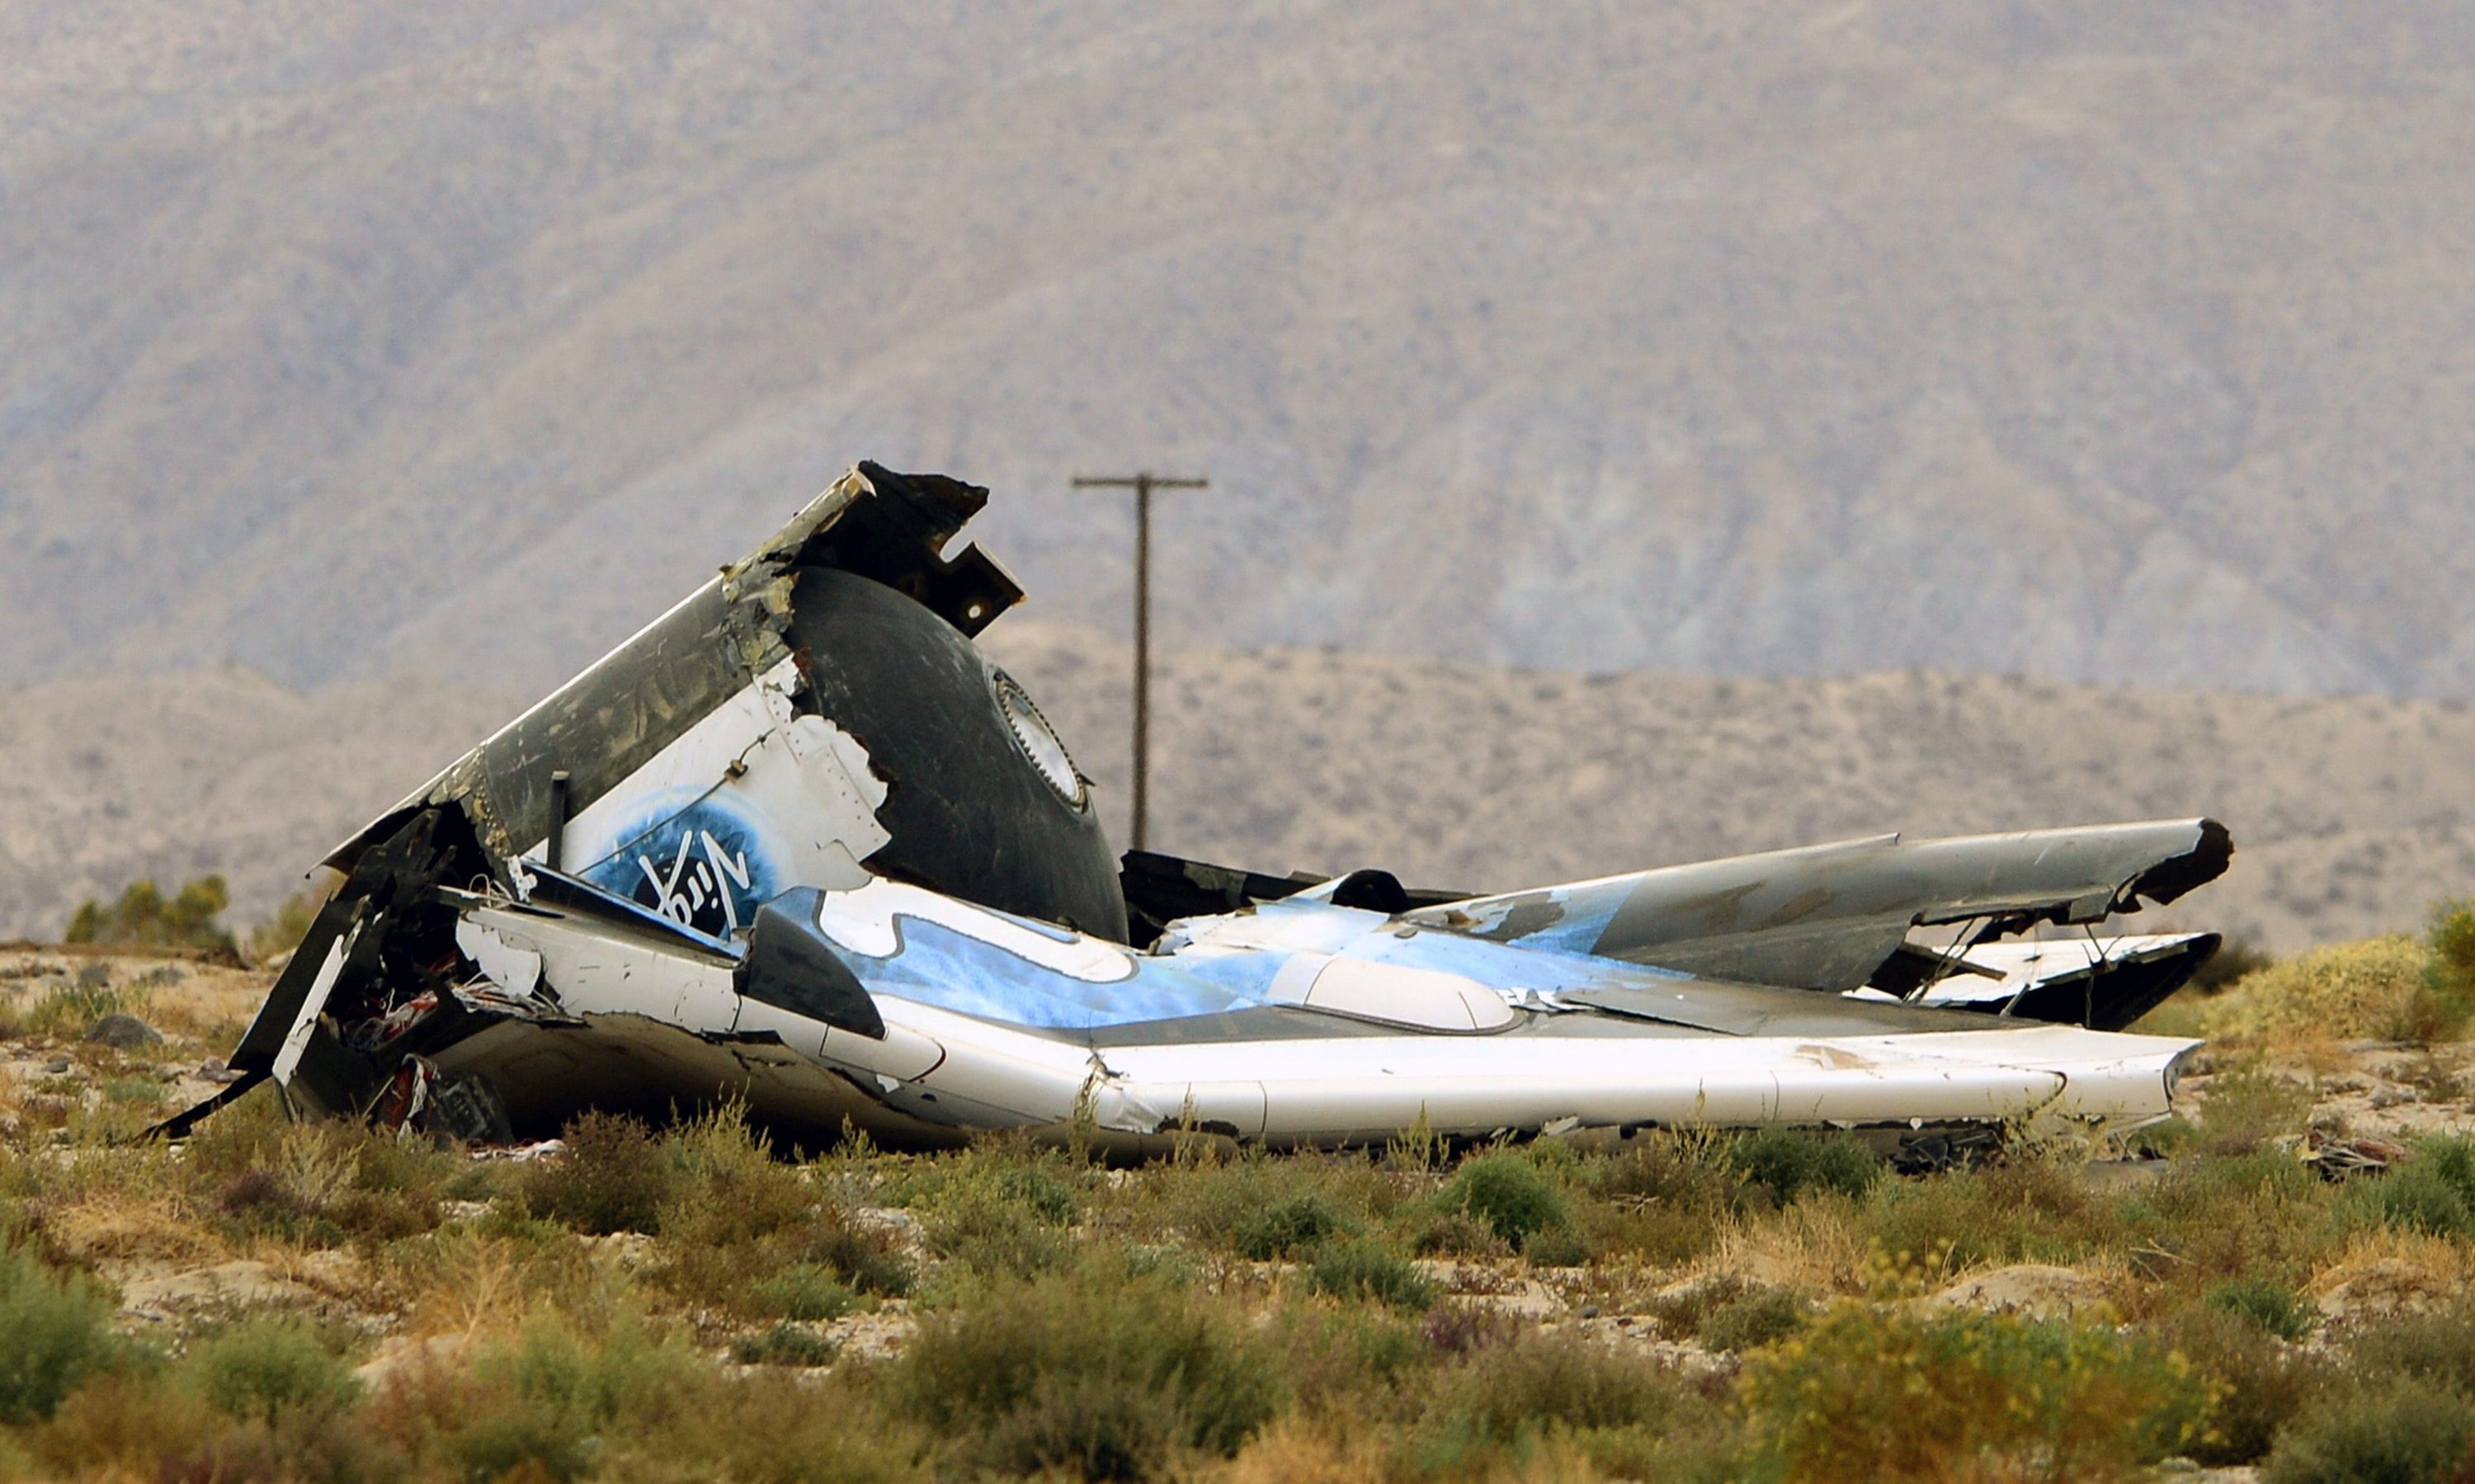 Das private Raumflugzeug SpaceShipTwo stürzte am 31. Oktober 2014 bei einem Testflug über der kalifornischen Mojave-Wüste ab. Pilot Michael Alsbury kam bei dem Unglück ums Leben, Co-Pilot Peter Siebold konnte sich mit seinem Fallschirm schwer verletzt retten.